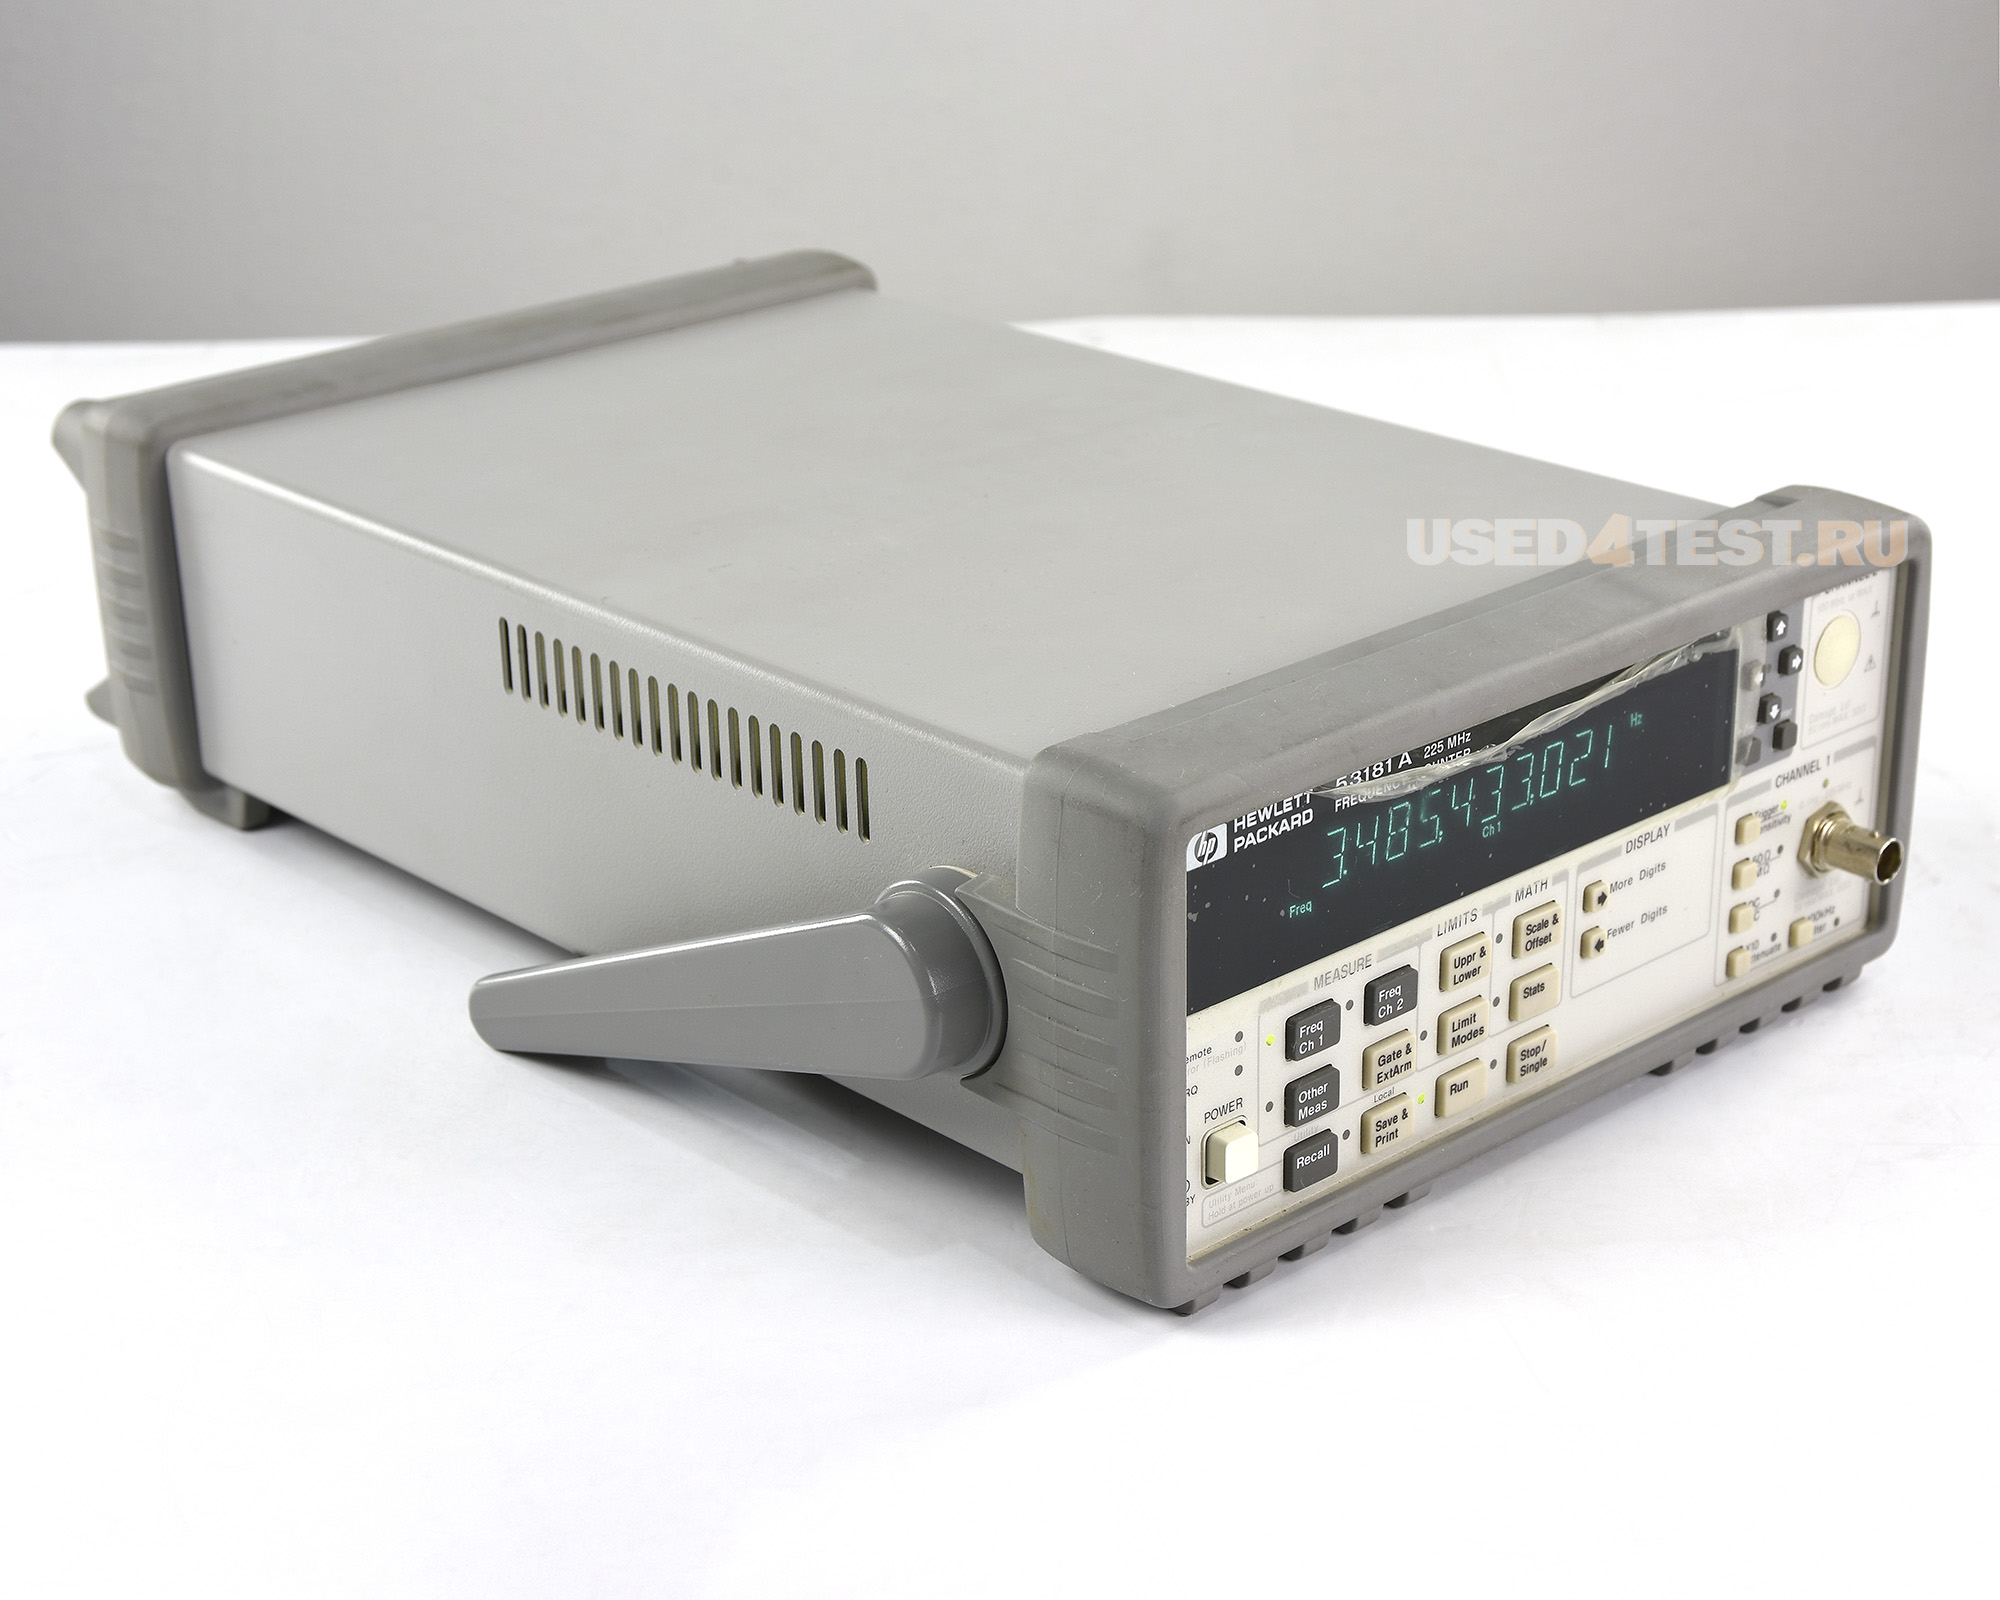 Универсальный частотомер/таймер HP 53181A
 
